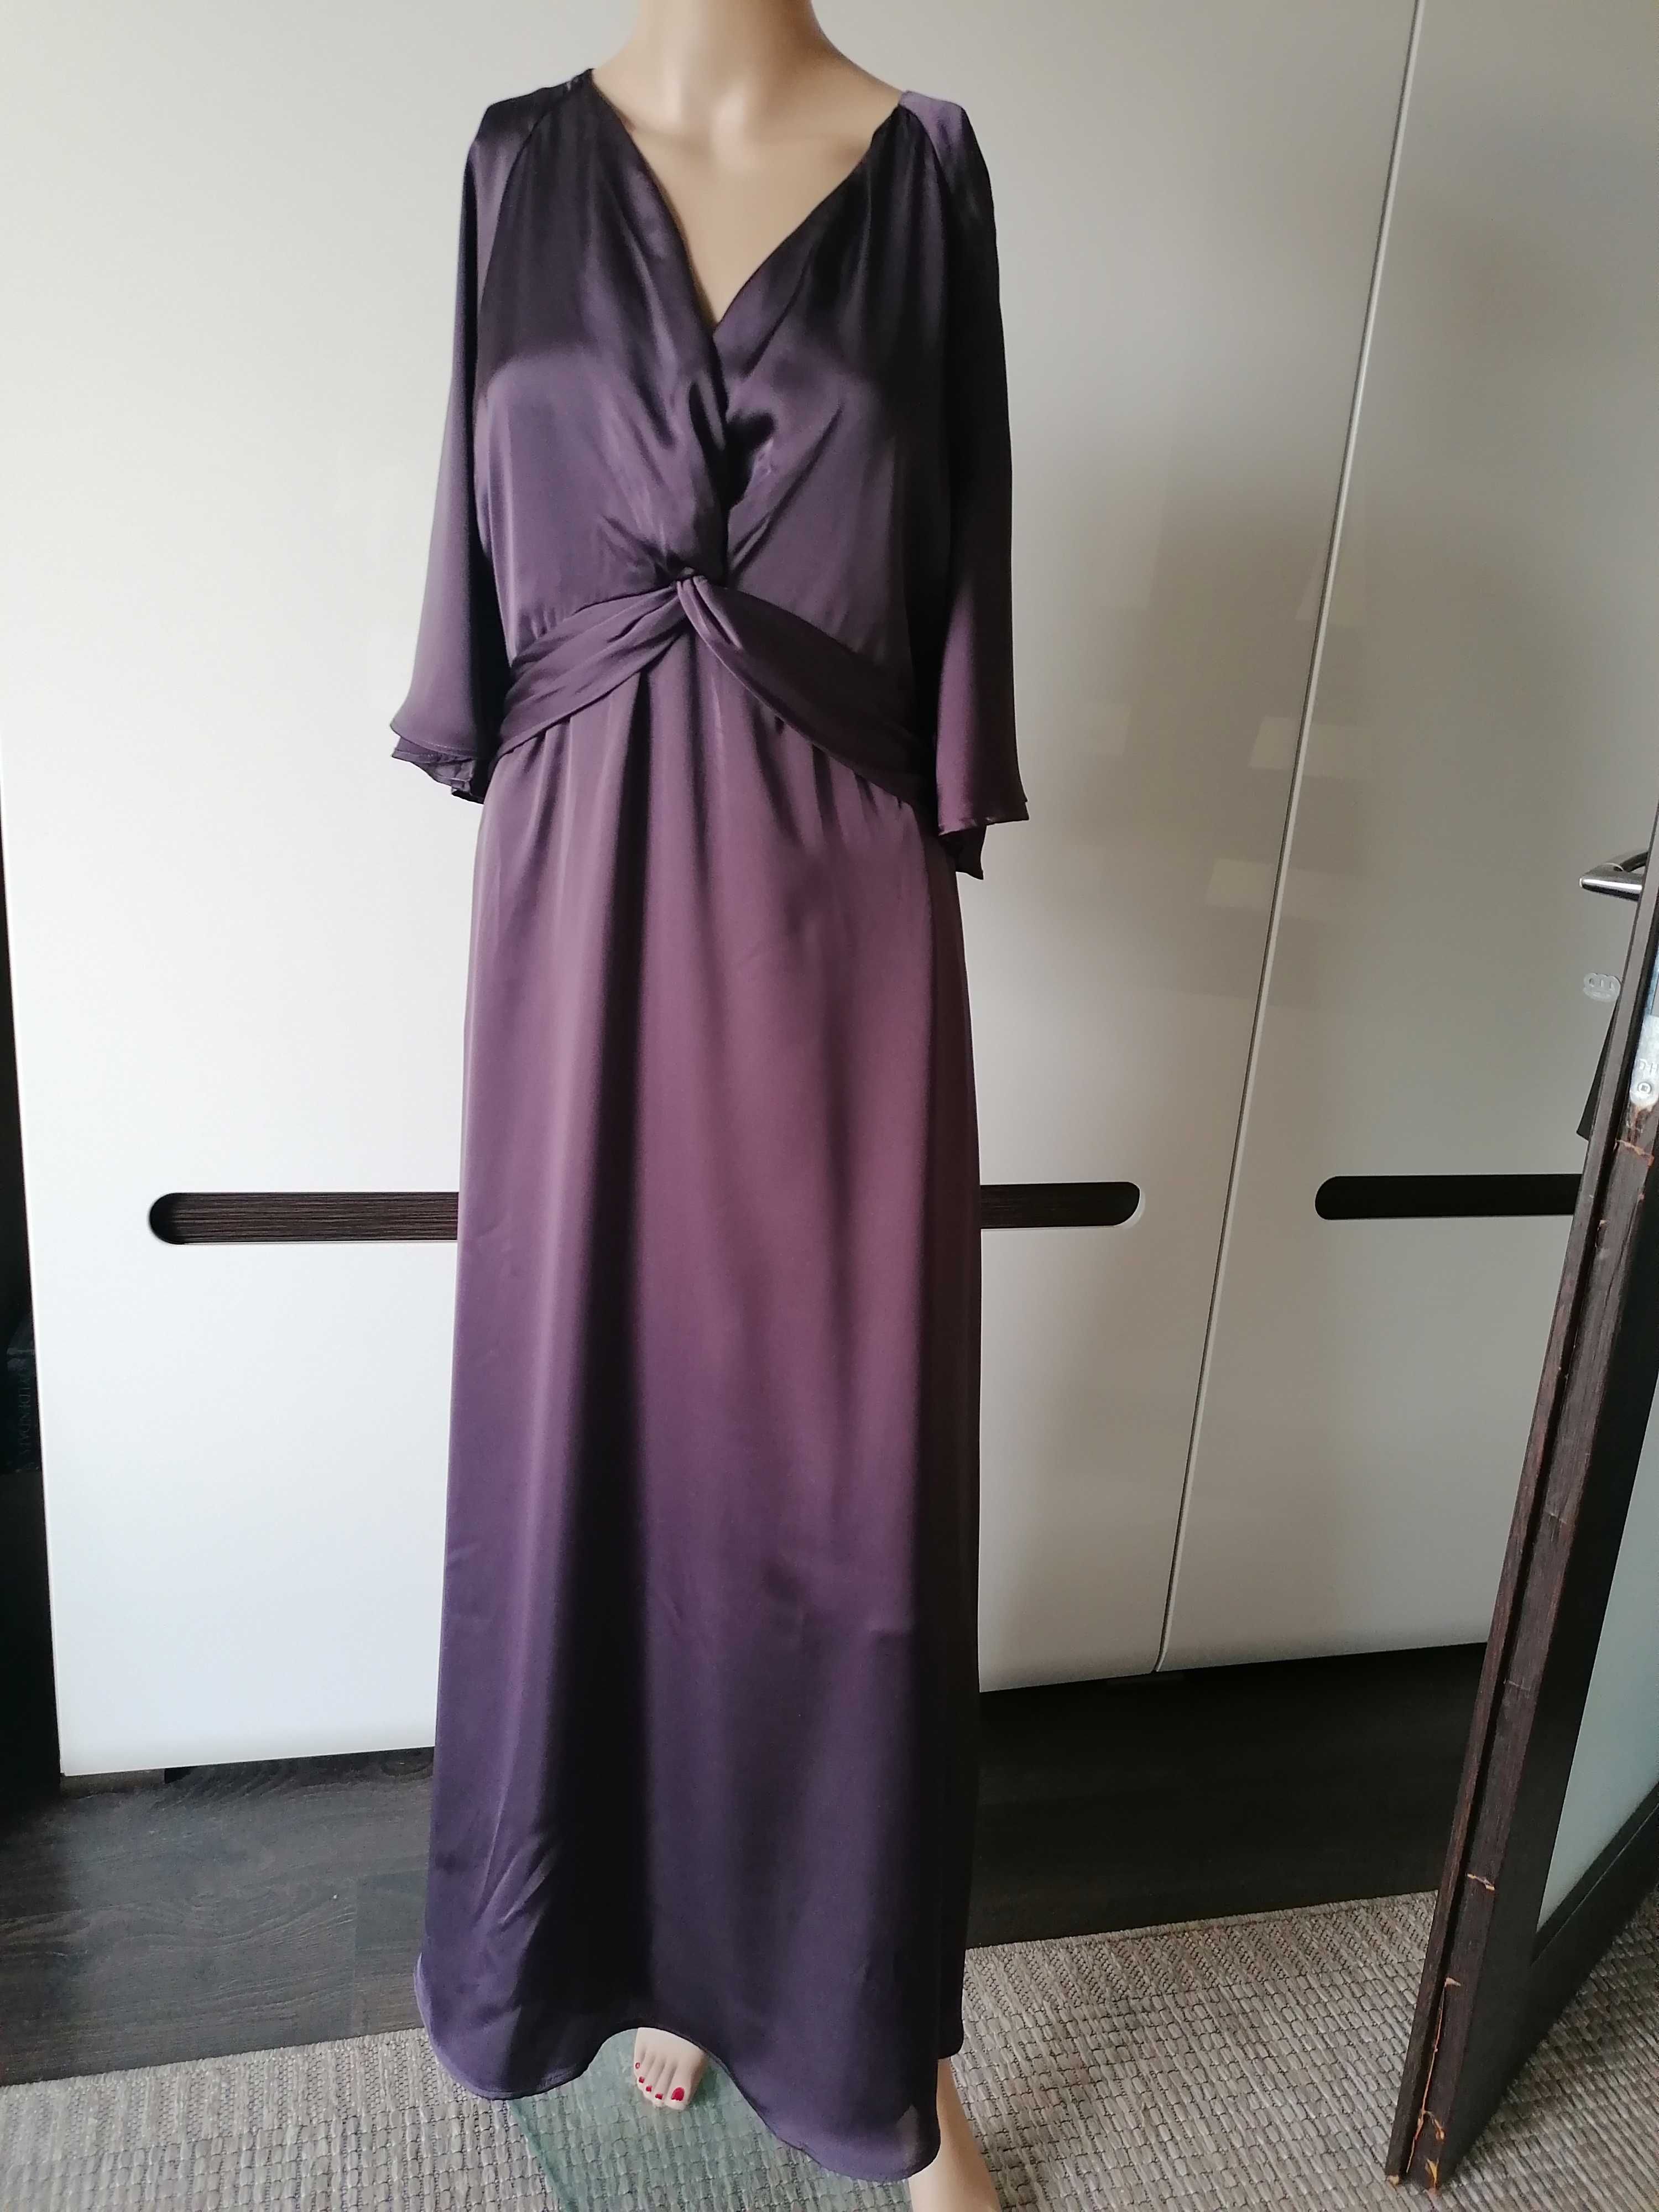 H&M nowa długa sukienka fiolet elegancka maxi L/40 TANIO! Bełchatów • OLX.pl